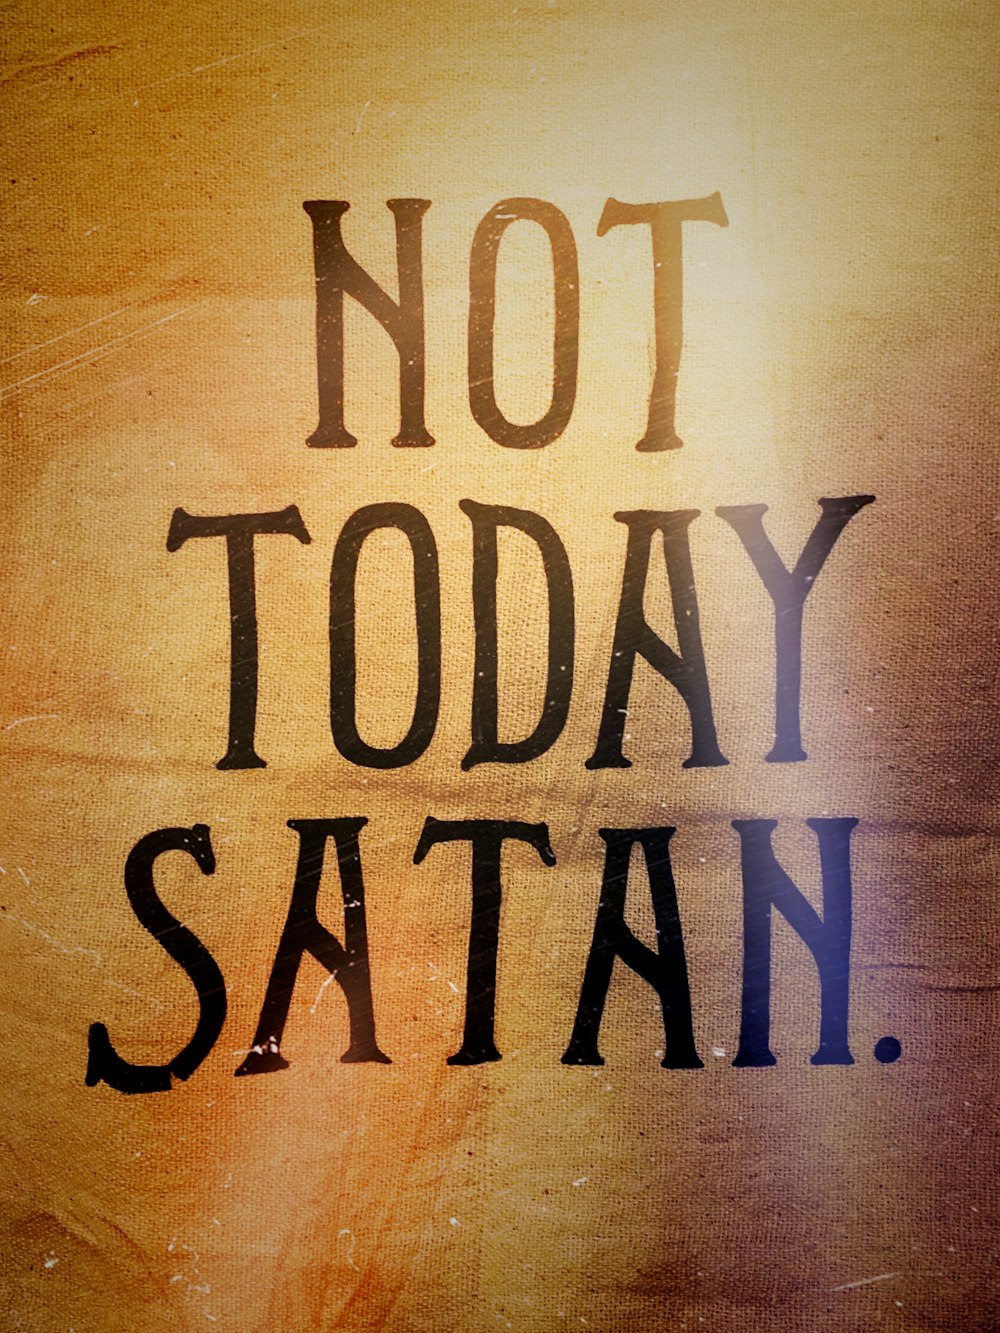 not today satan text